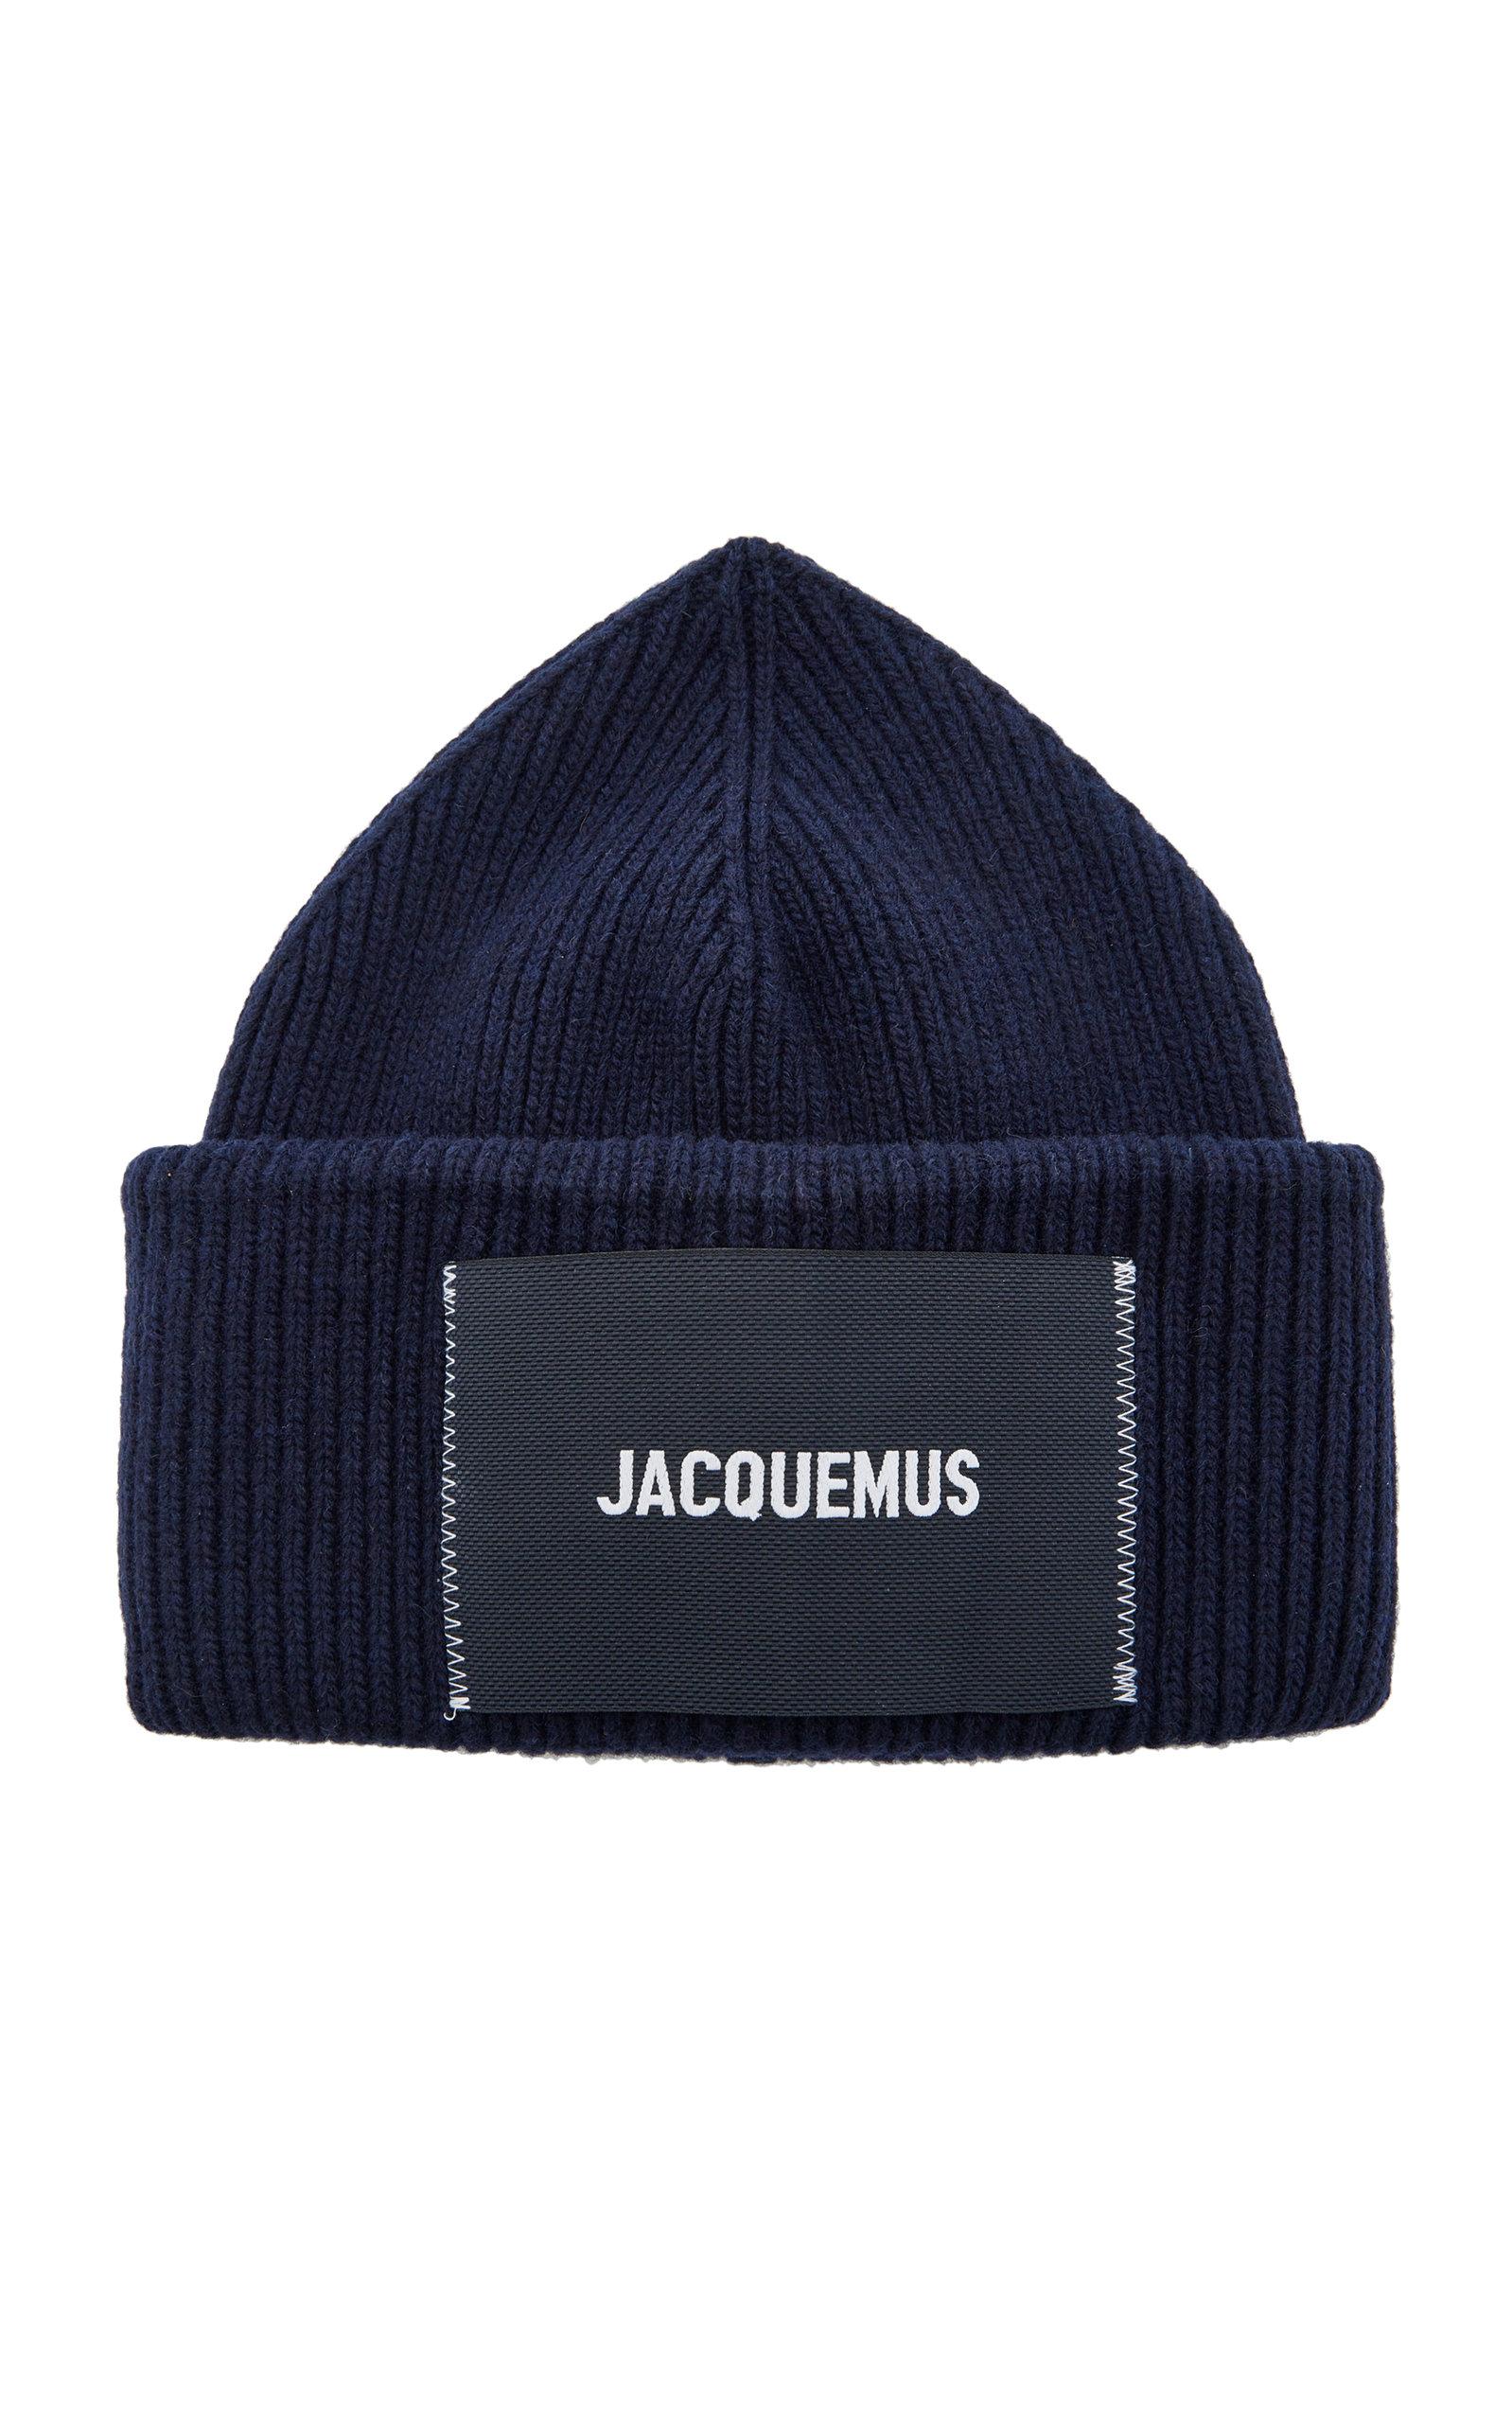 Jacquemus Le Bonnet Wool-blend Hat in Blue | Lyst